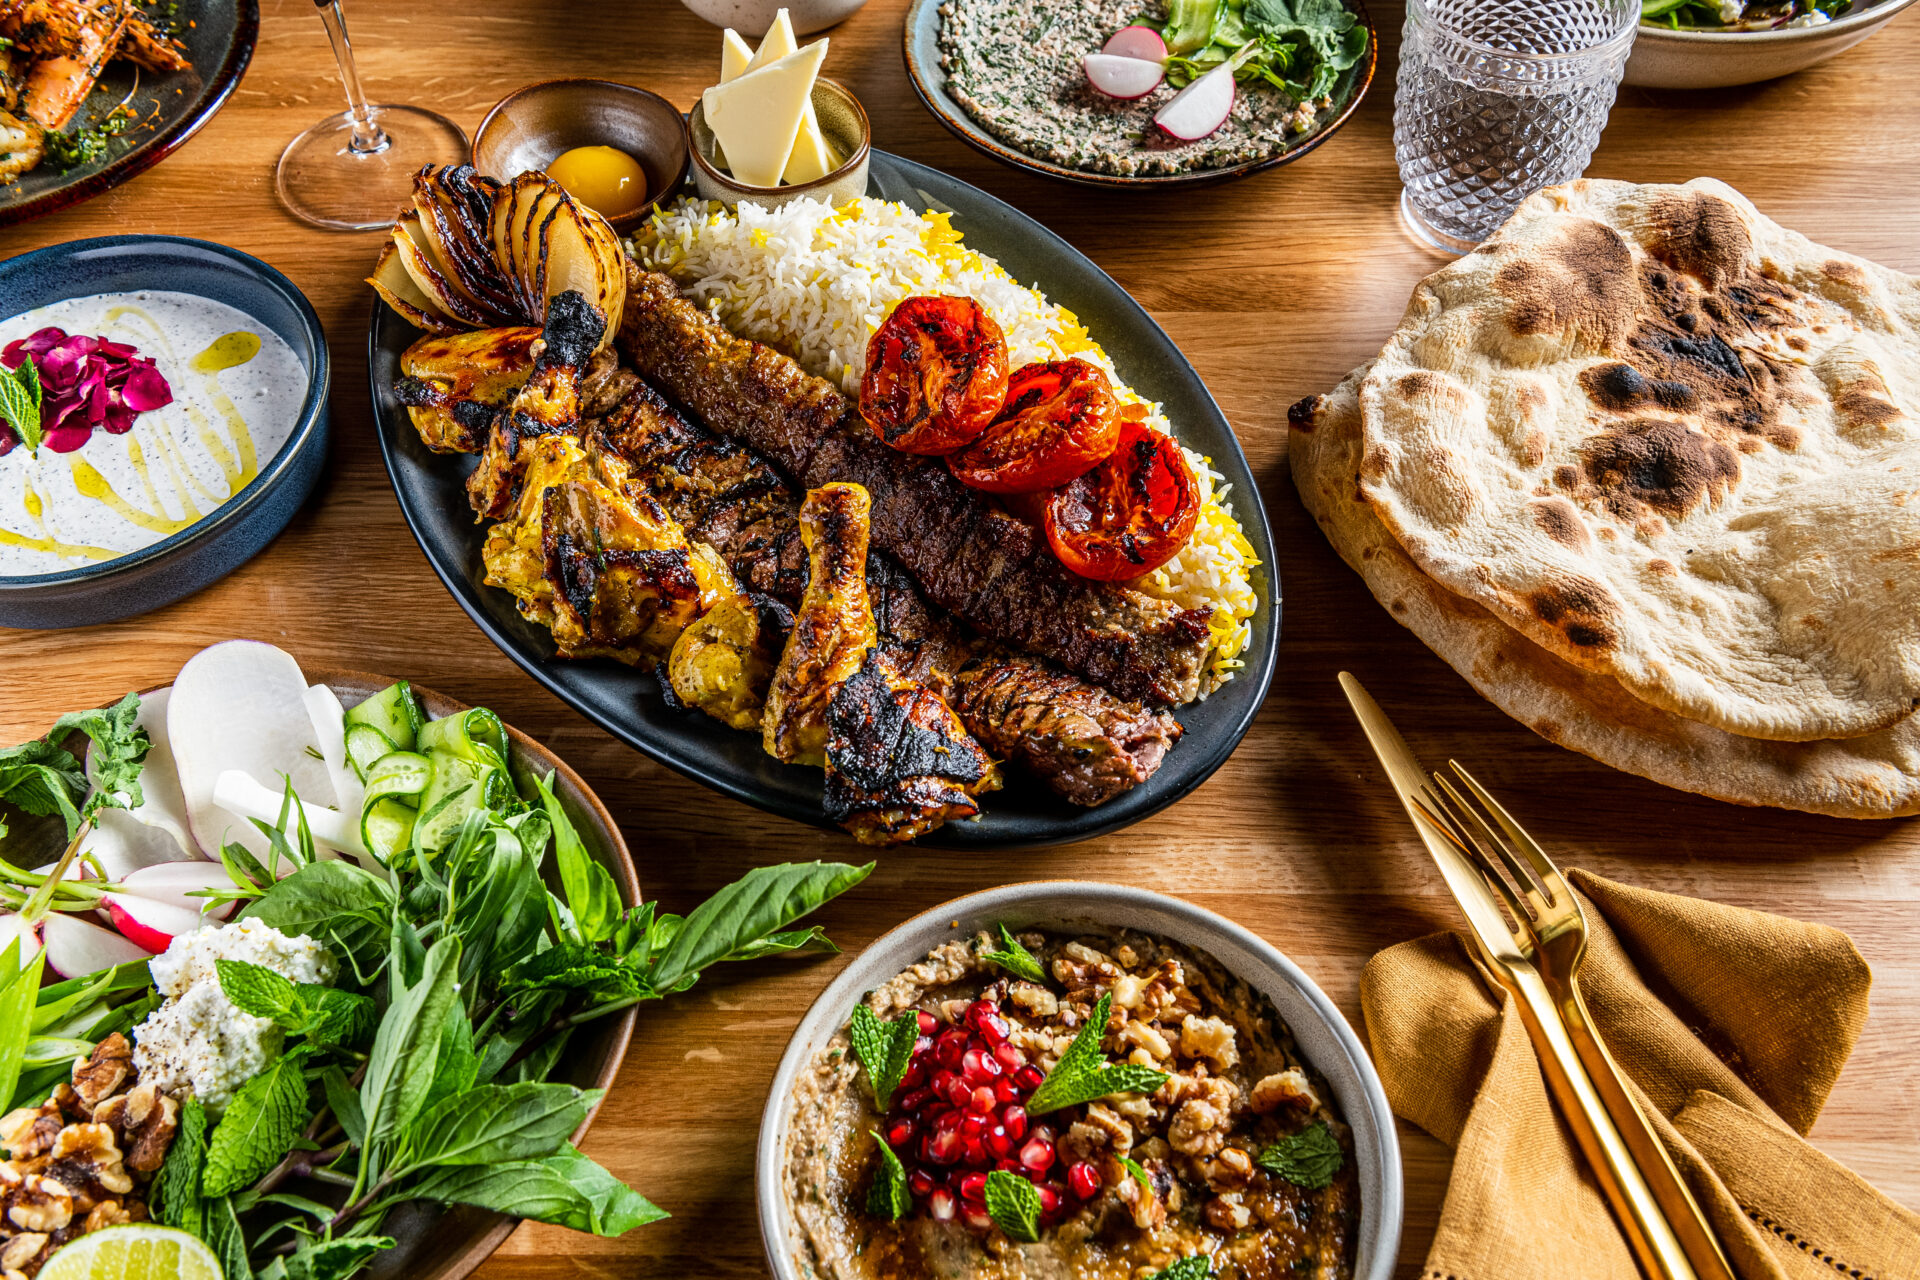 Iranian dishes at Joon